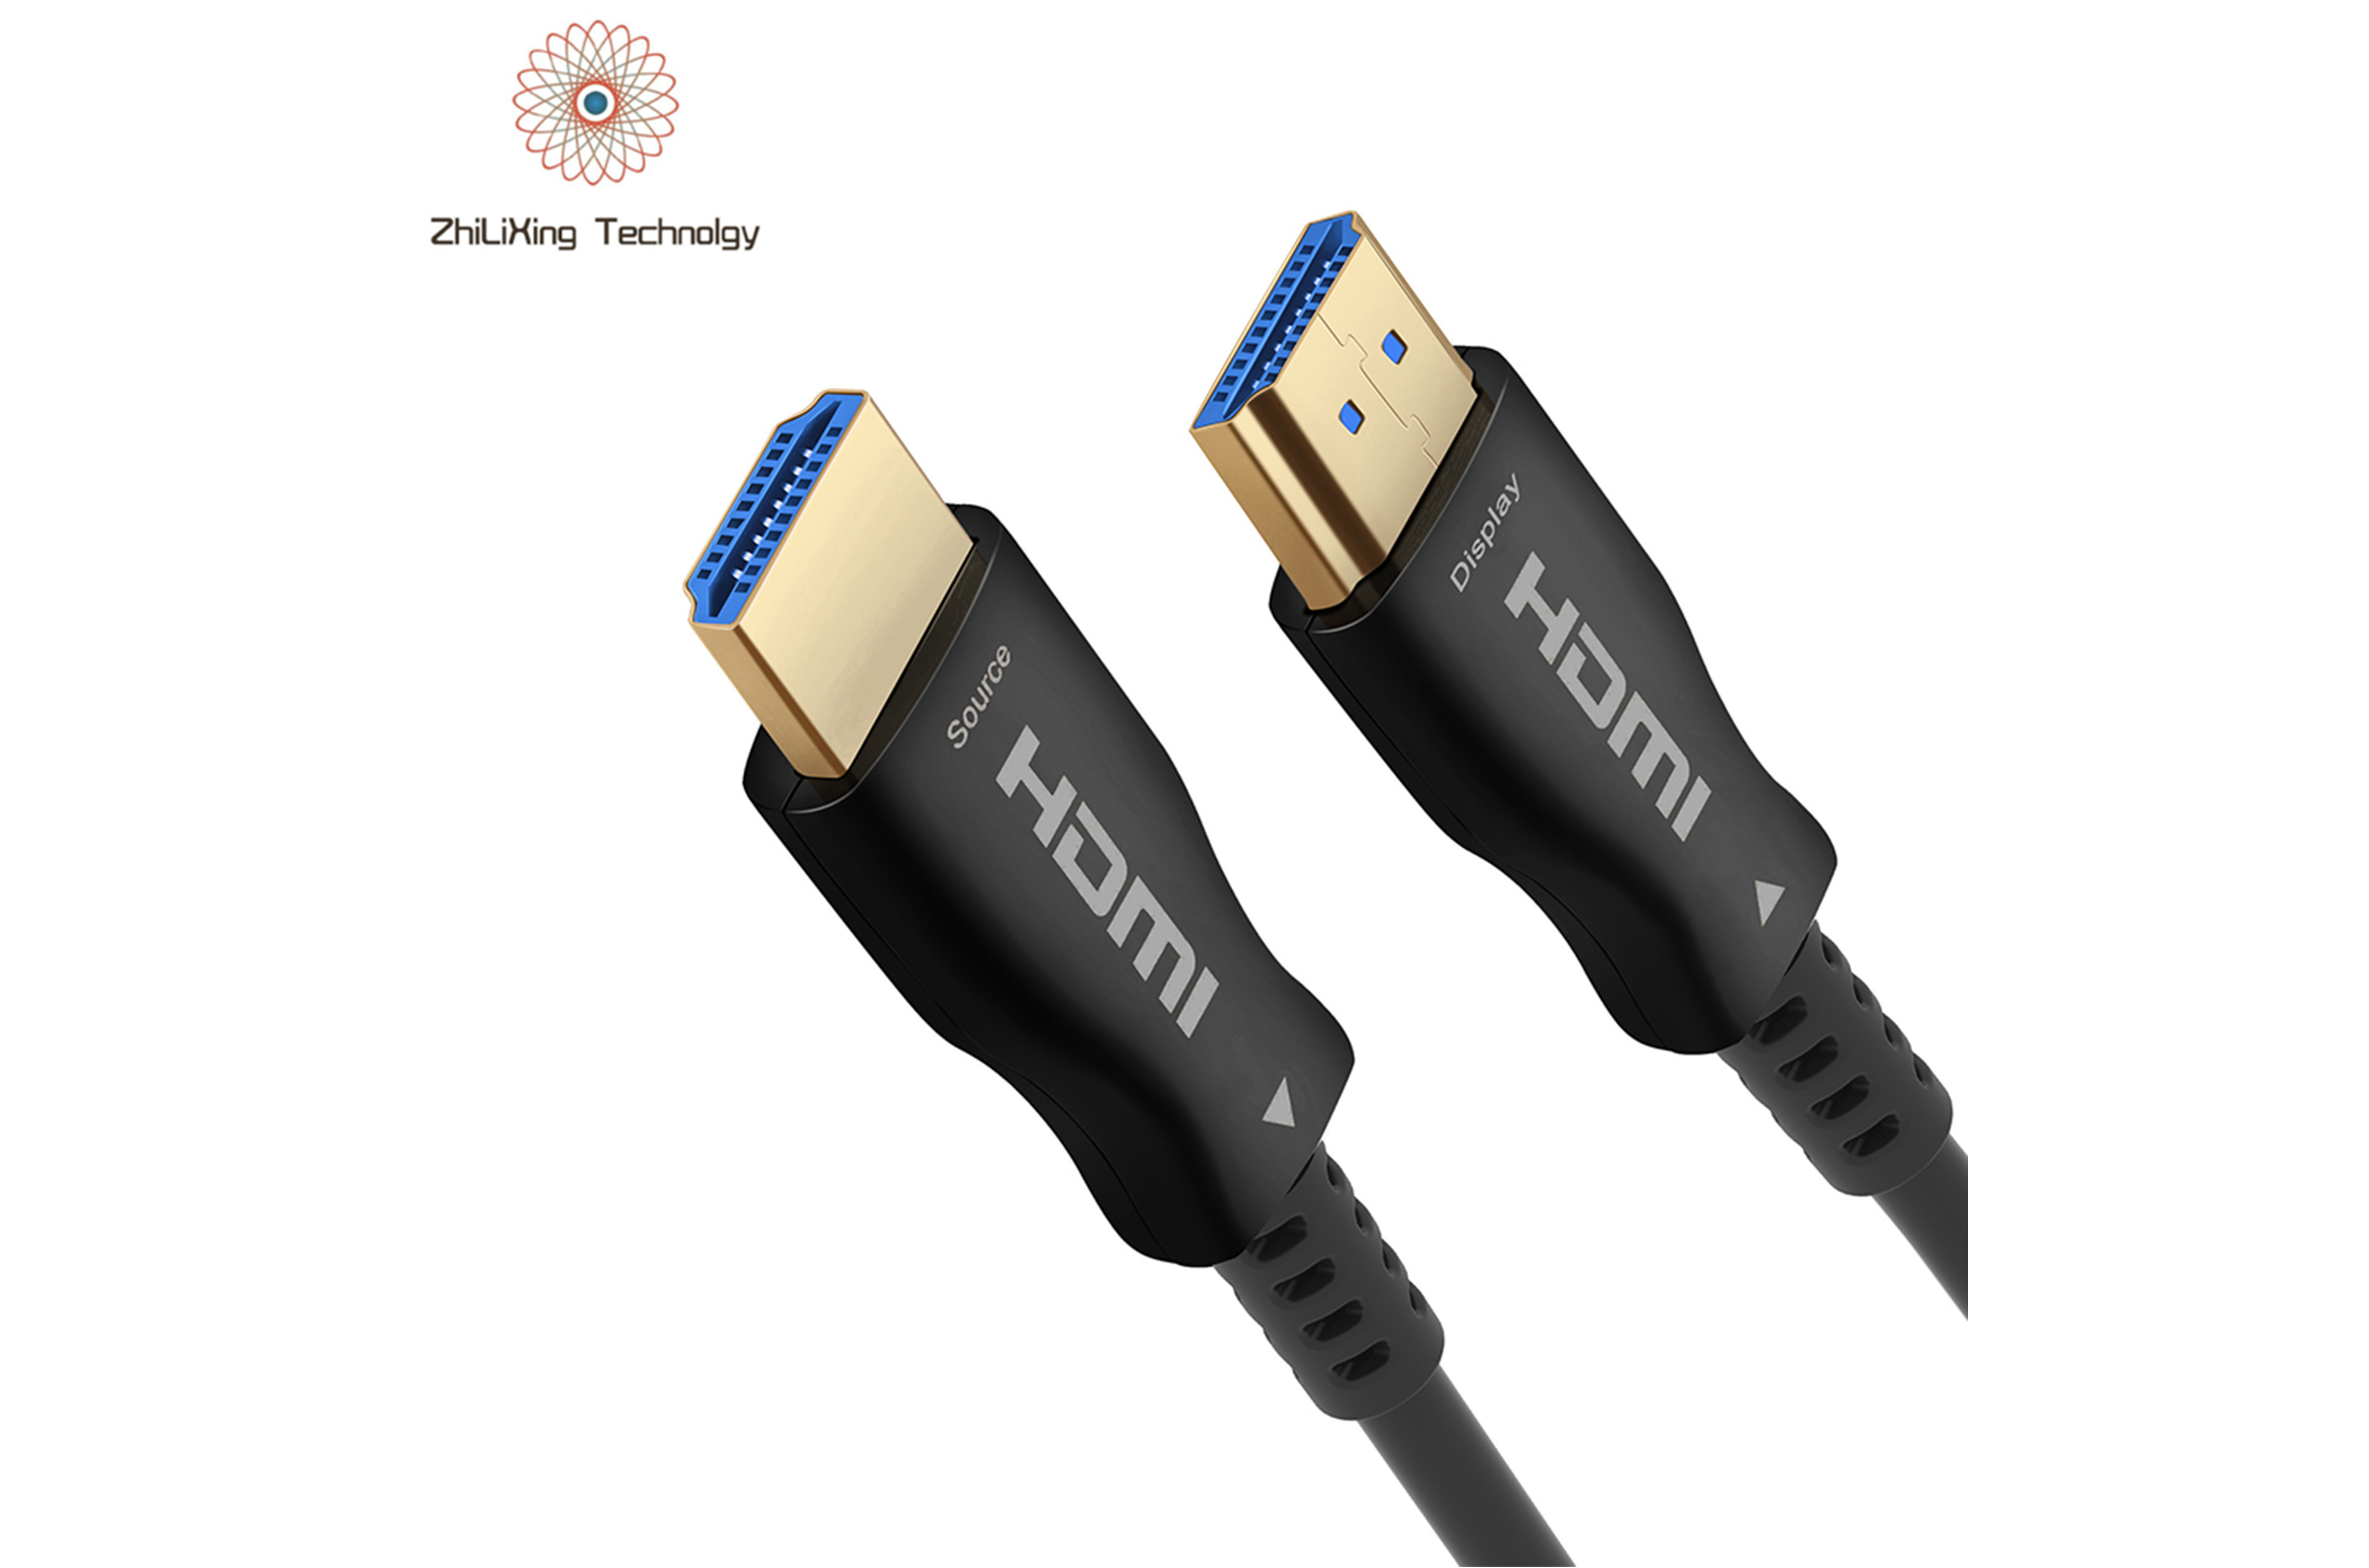 HDMI fiber optic cable-21020